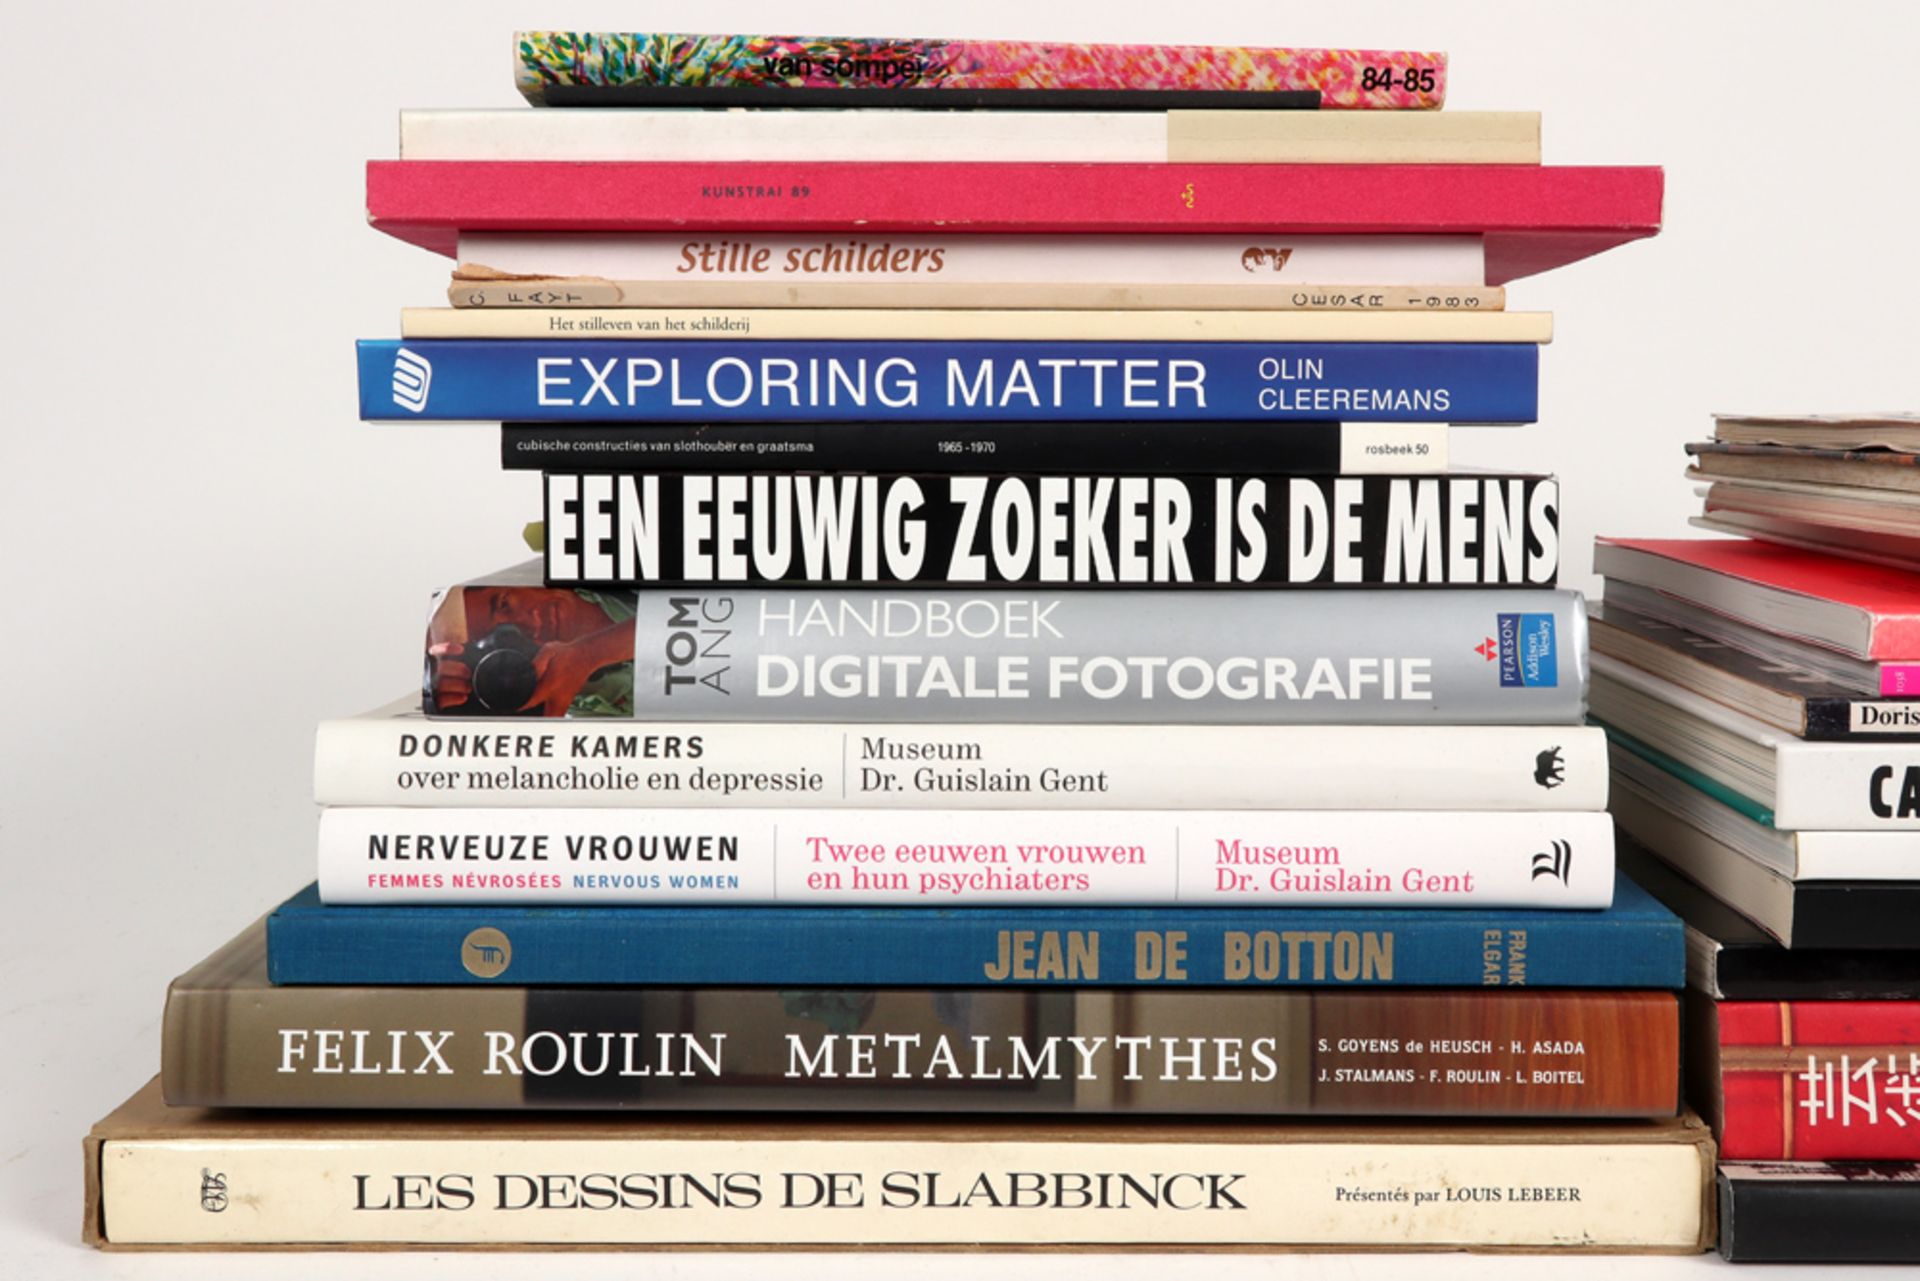 Several books, mostly about modern art || Lot kunstboeken, vooral over moderne kunst - Image 2 of 4